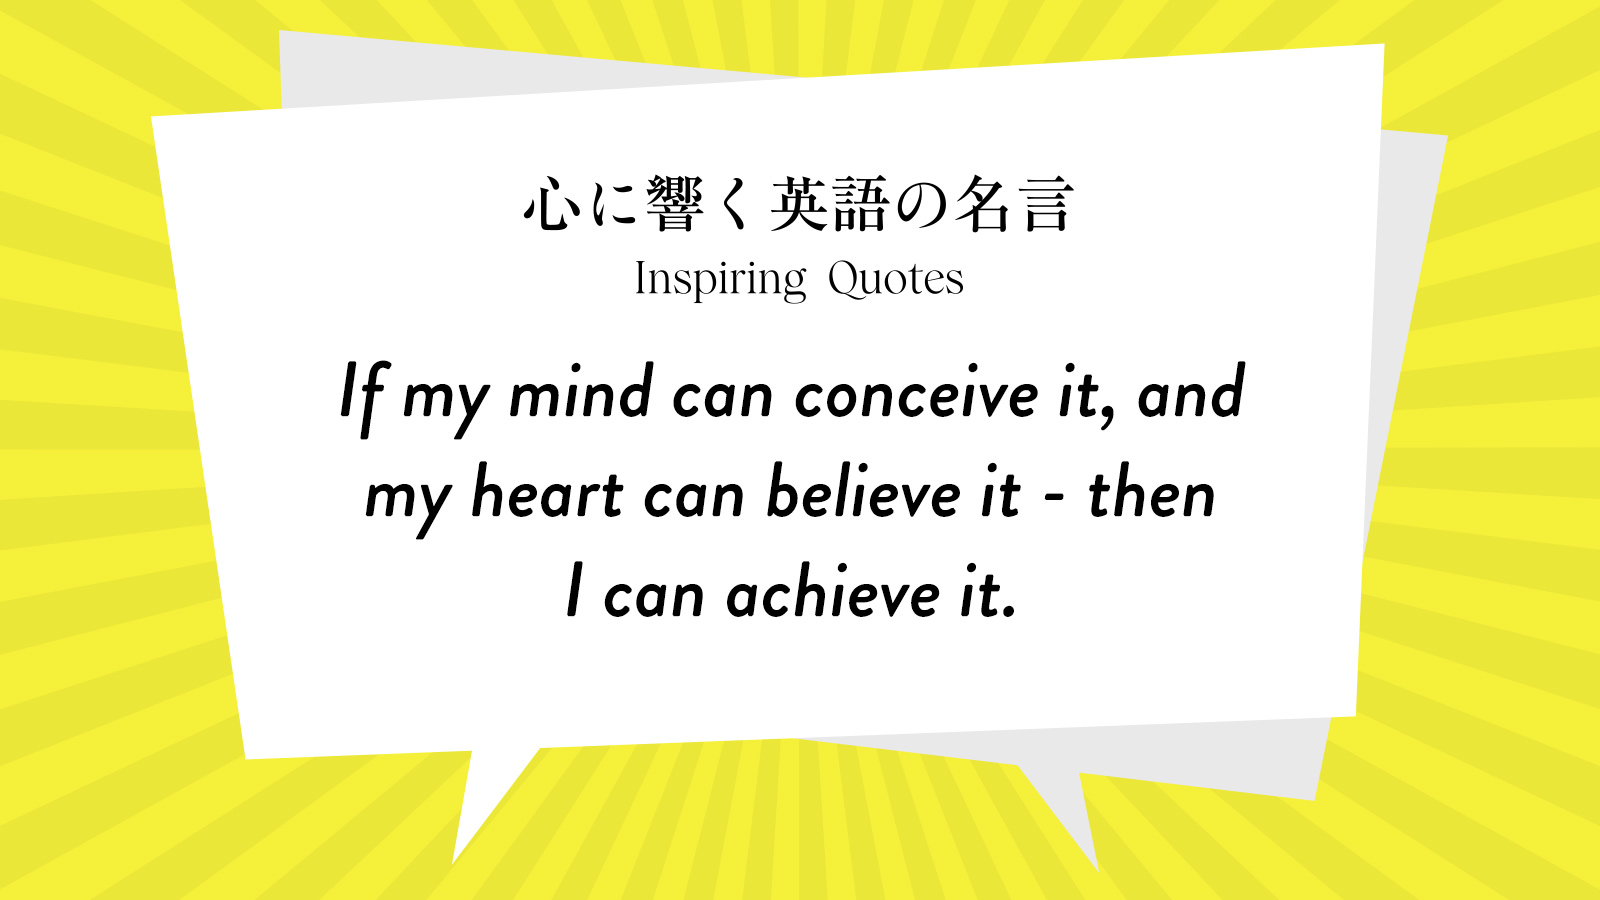 今週の名言 “If my mind can conceive it, and my heart can believe it - then I can achieve it.” | Inspiring Quotes: 心に響く英語の名言